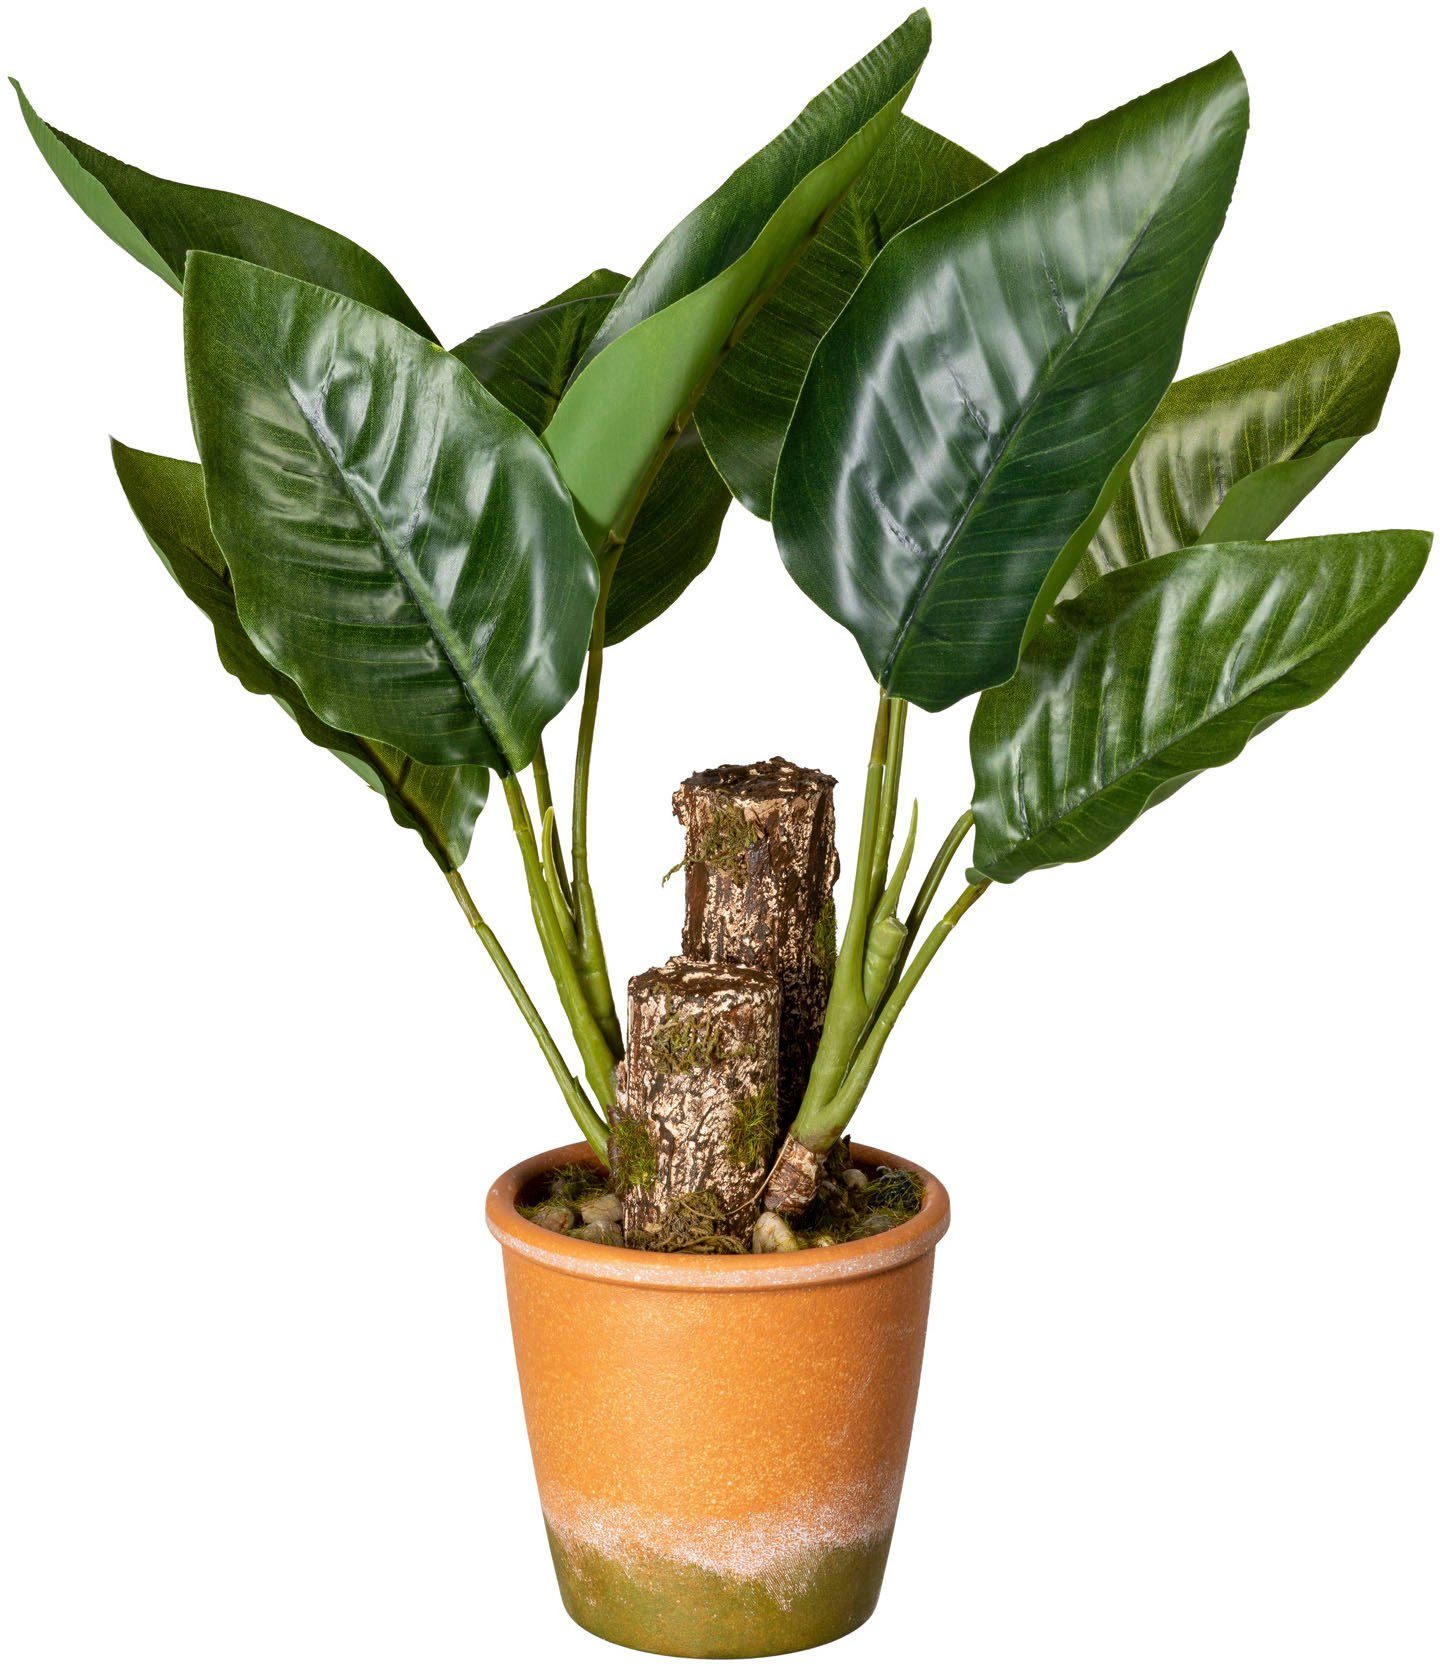 Creativ green Kunst-potplanten Bladplant Canna in de paperpot (1 stuk)